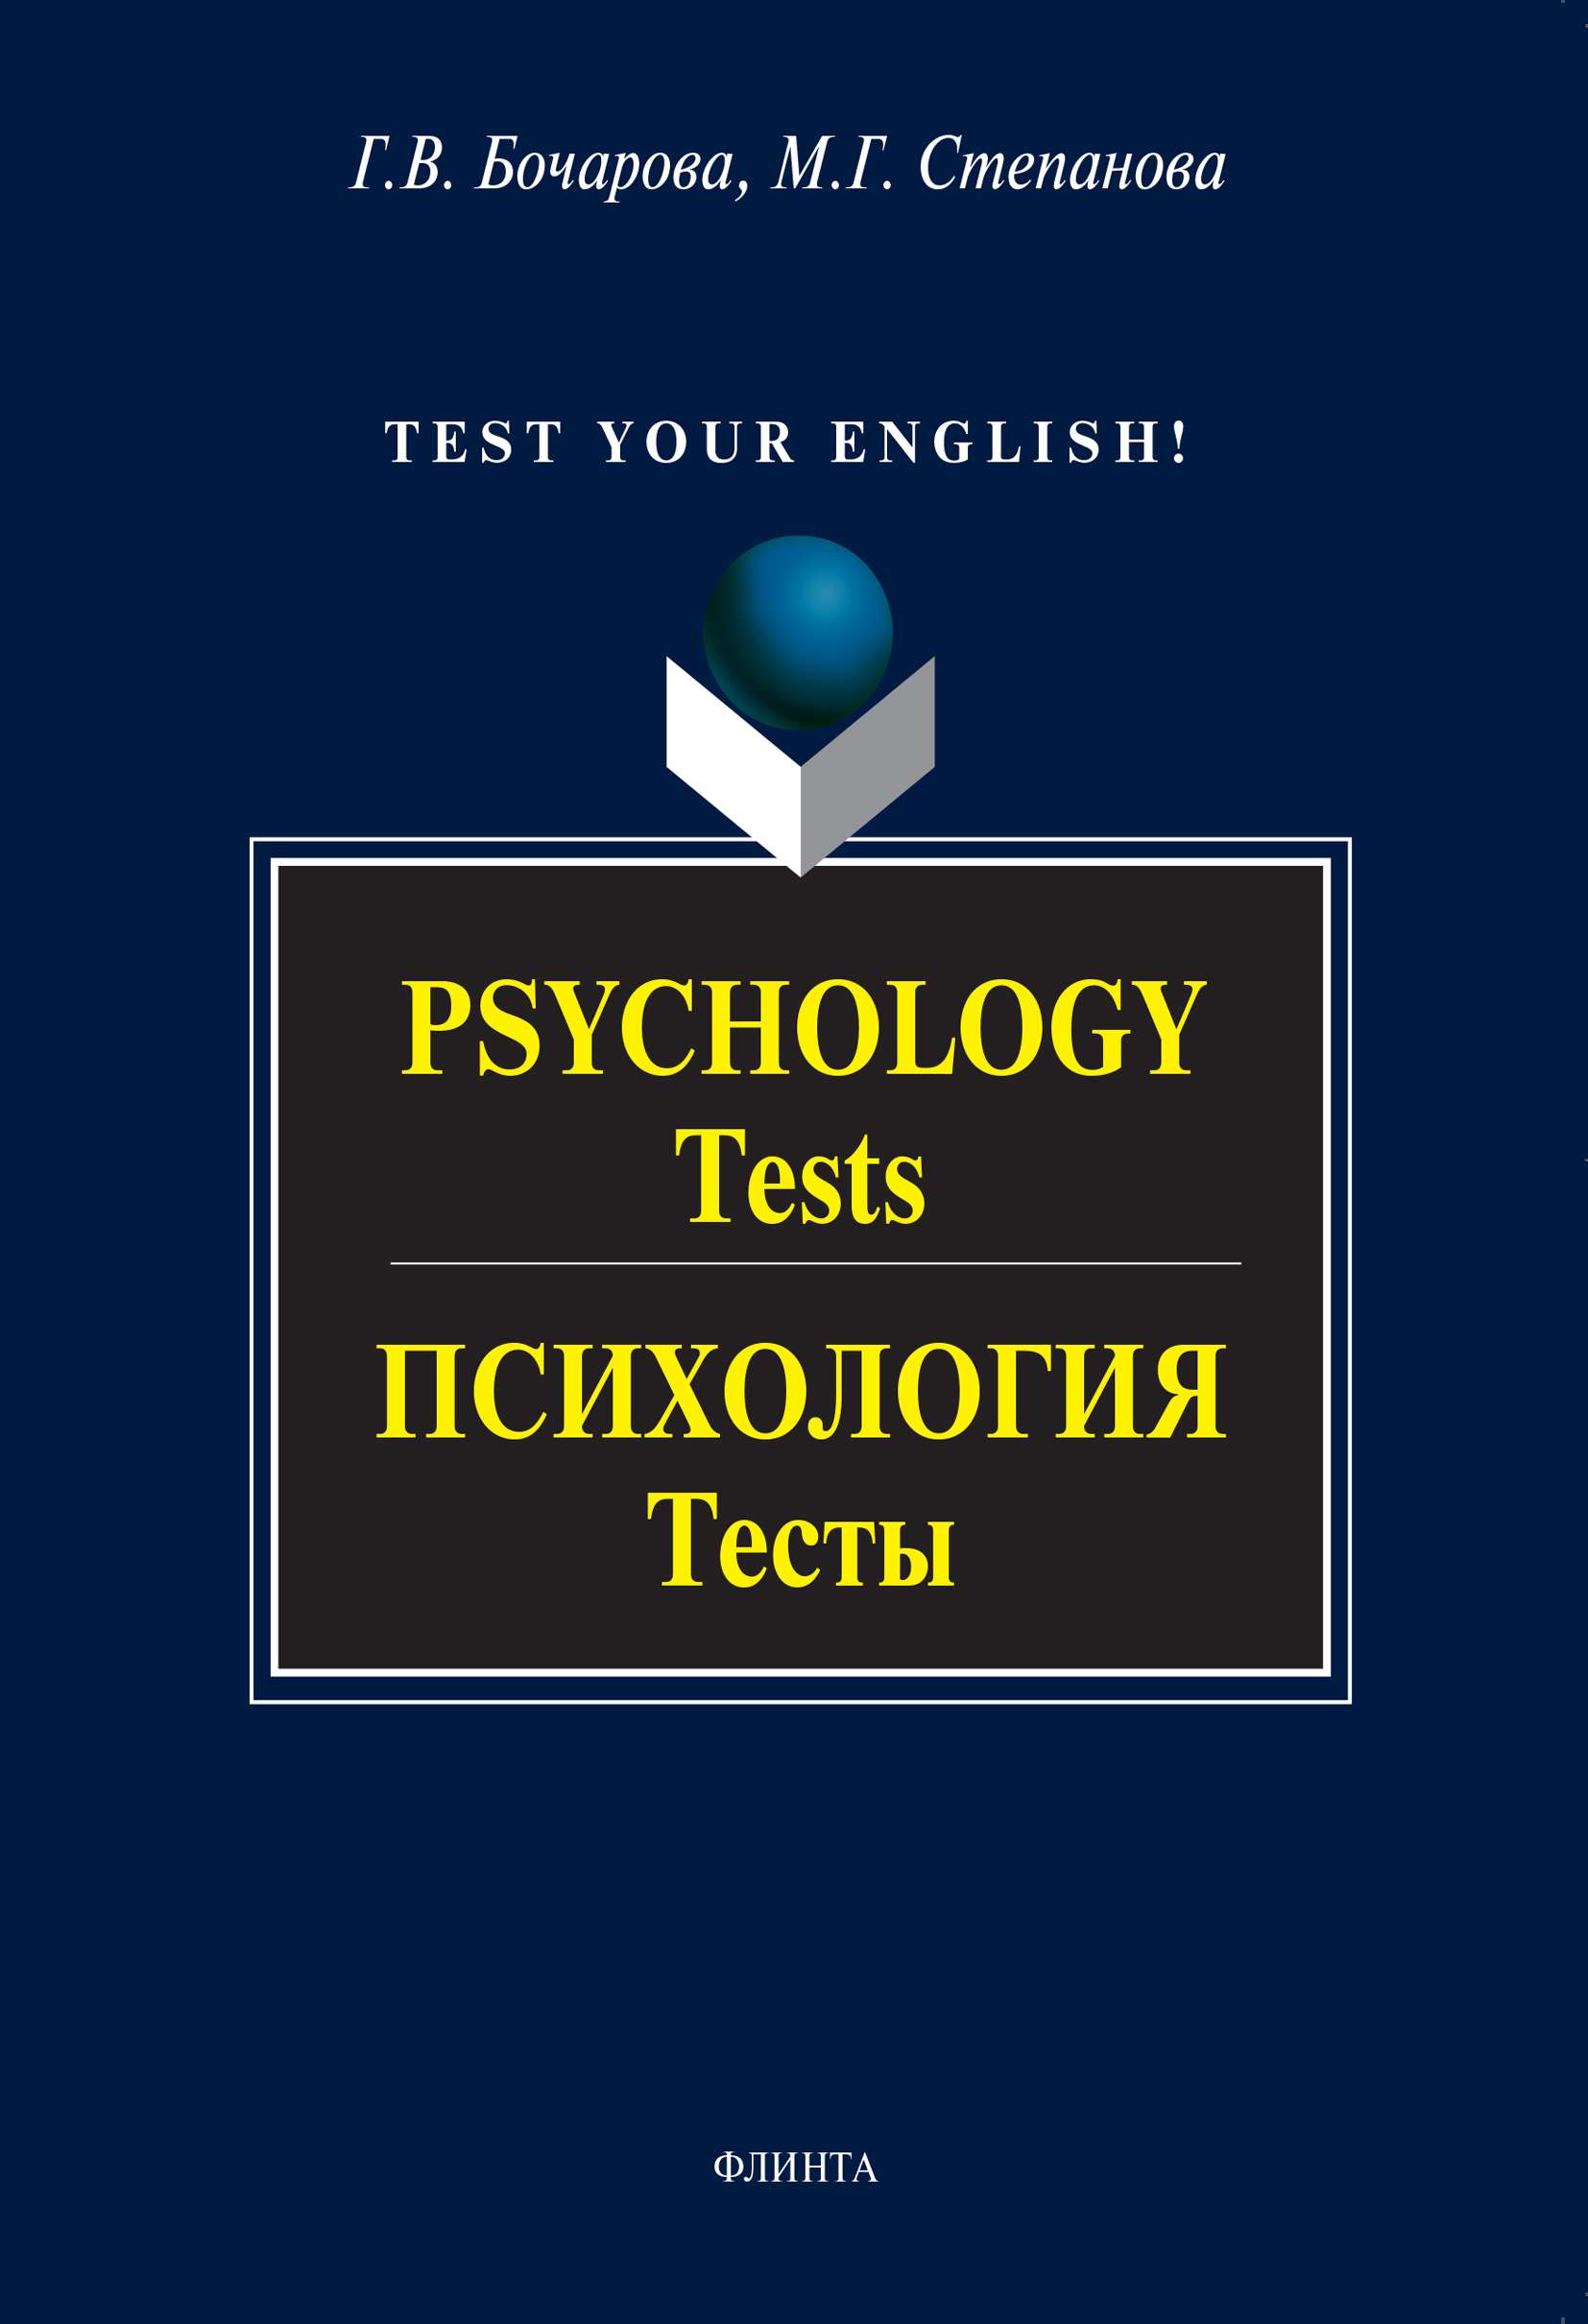 Psychology. Tests /Психология. Тесты